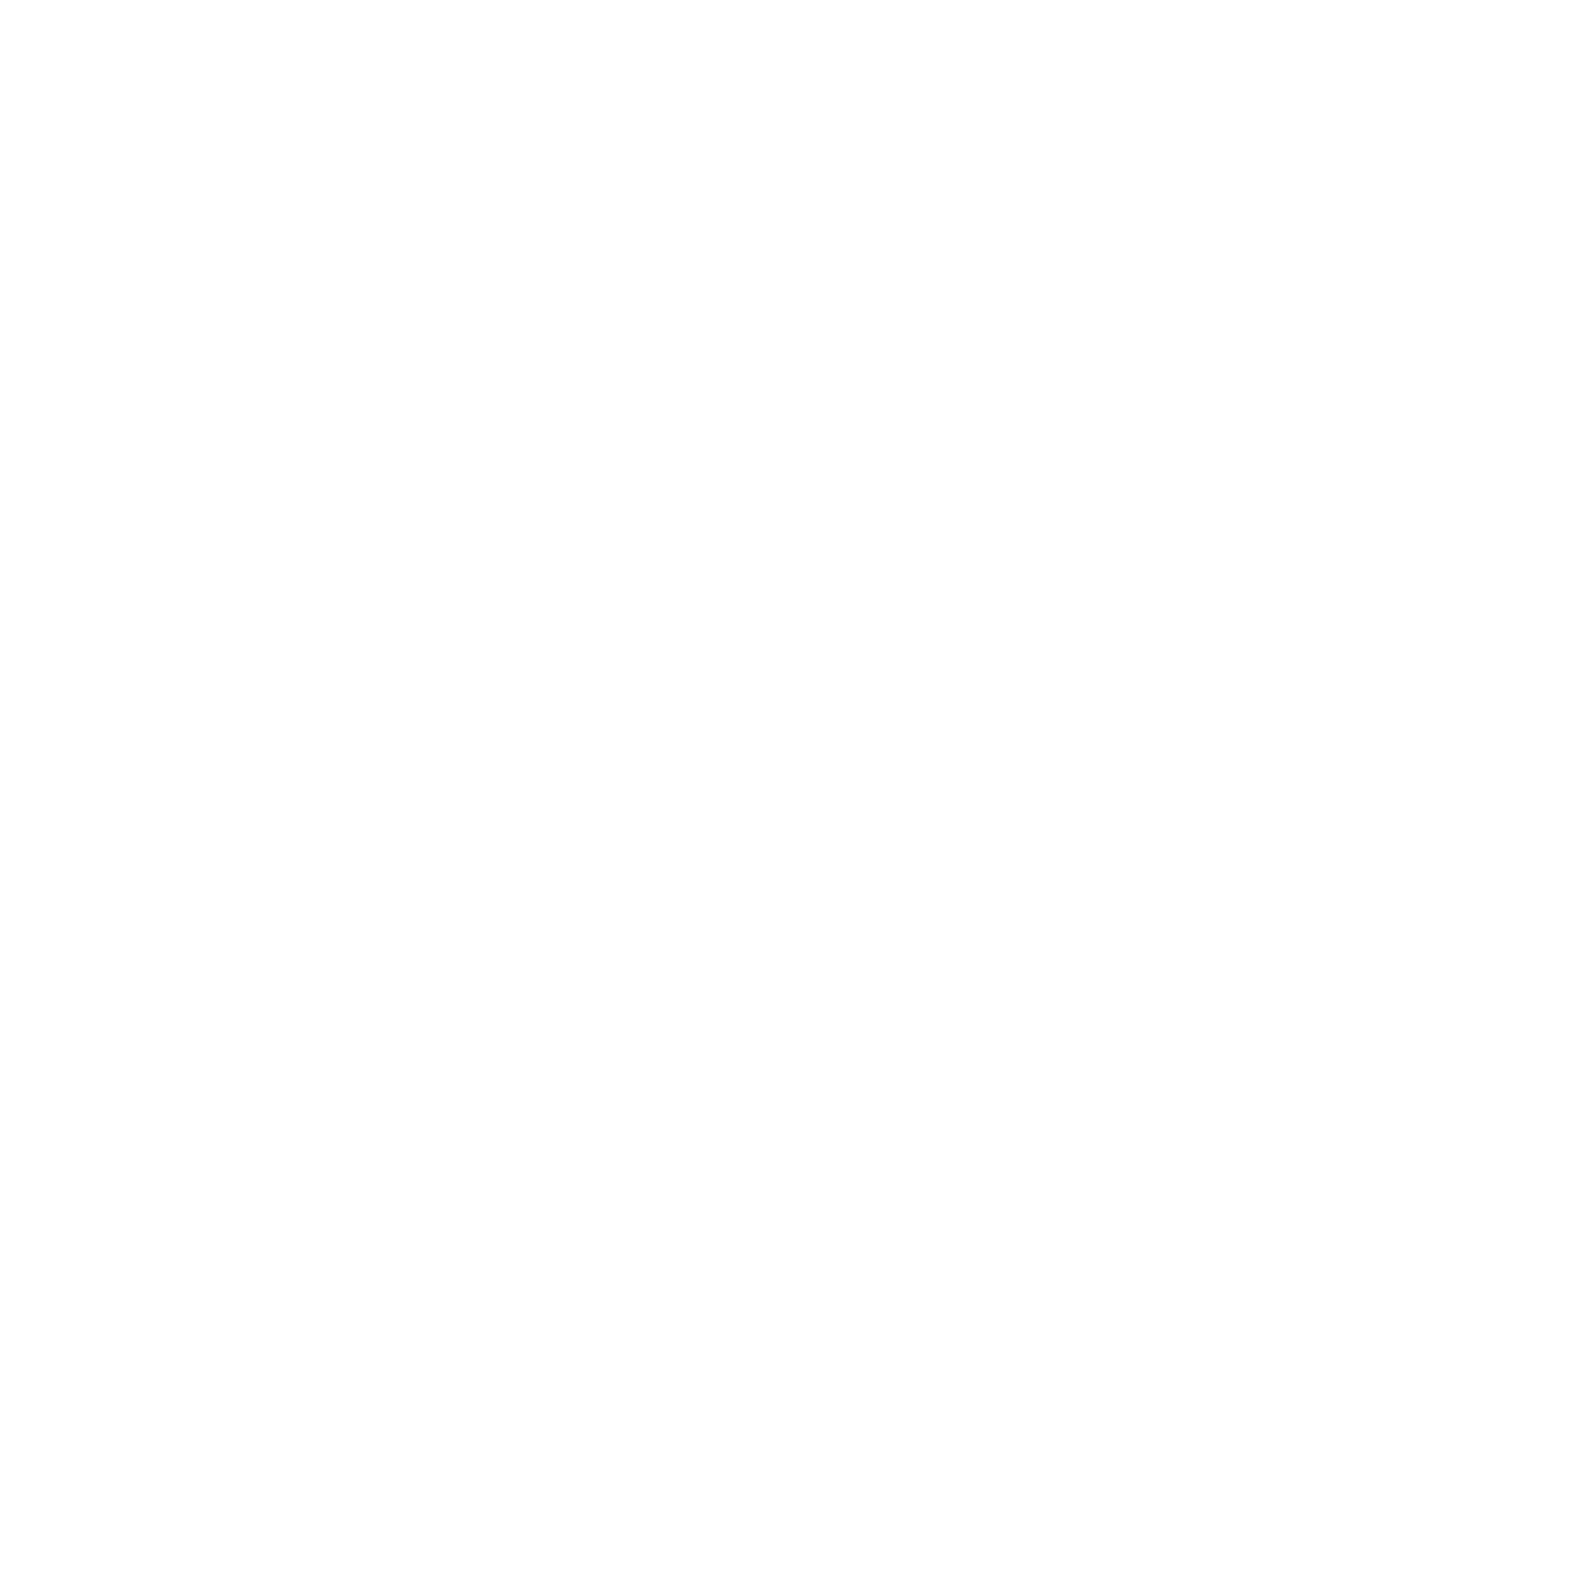 Söktas Tekstil logo for dark backgrounds (transparent PNG)